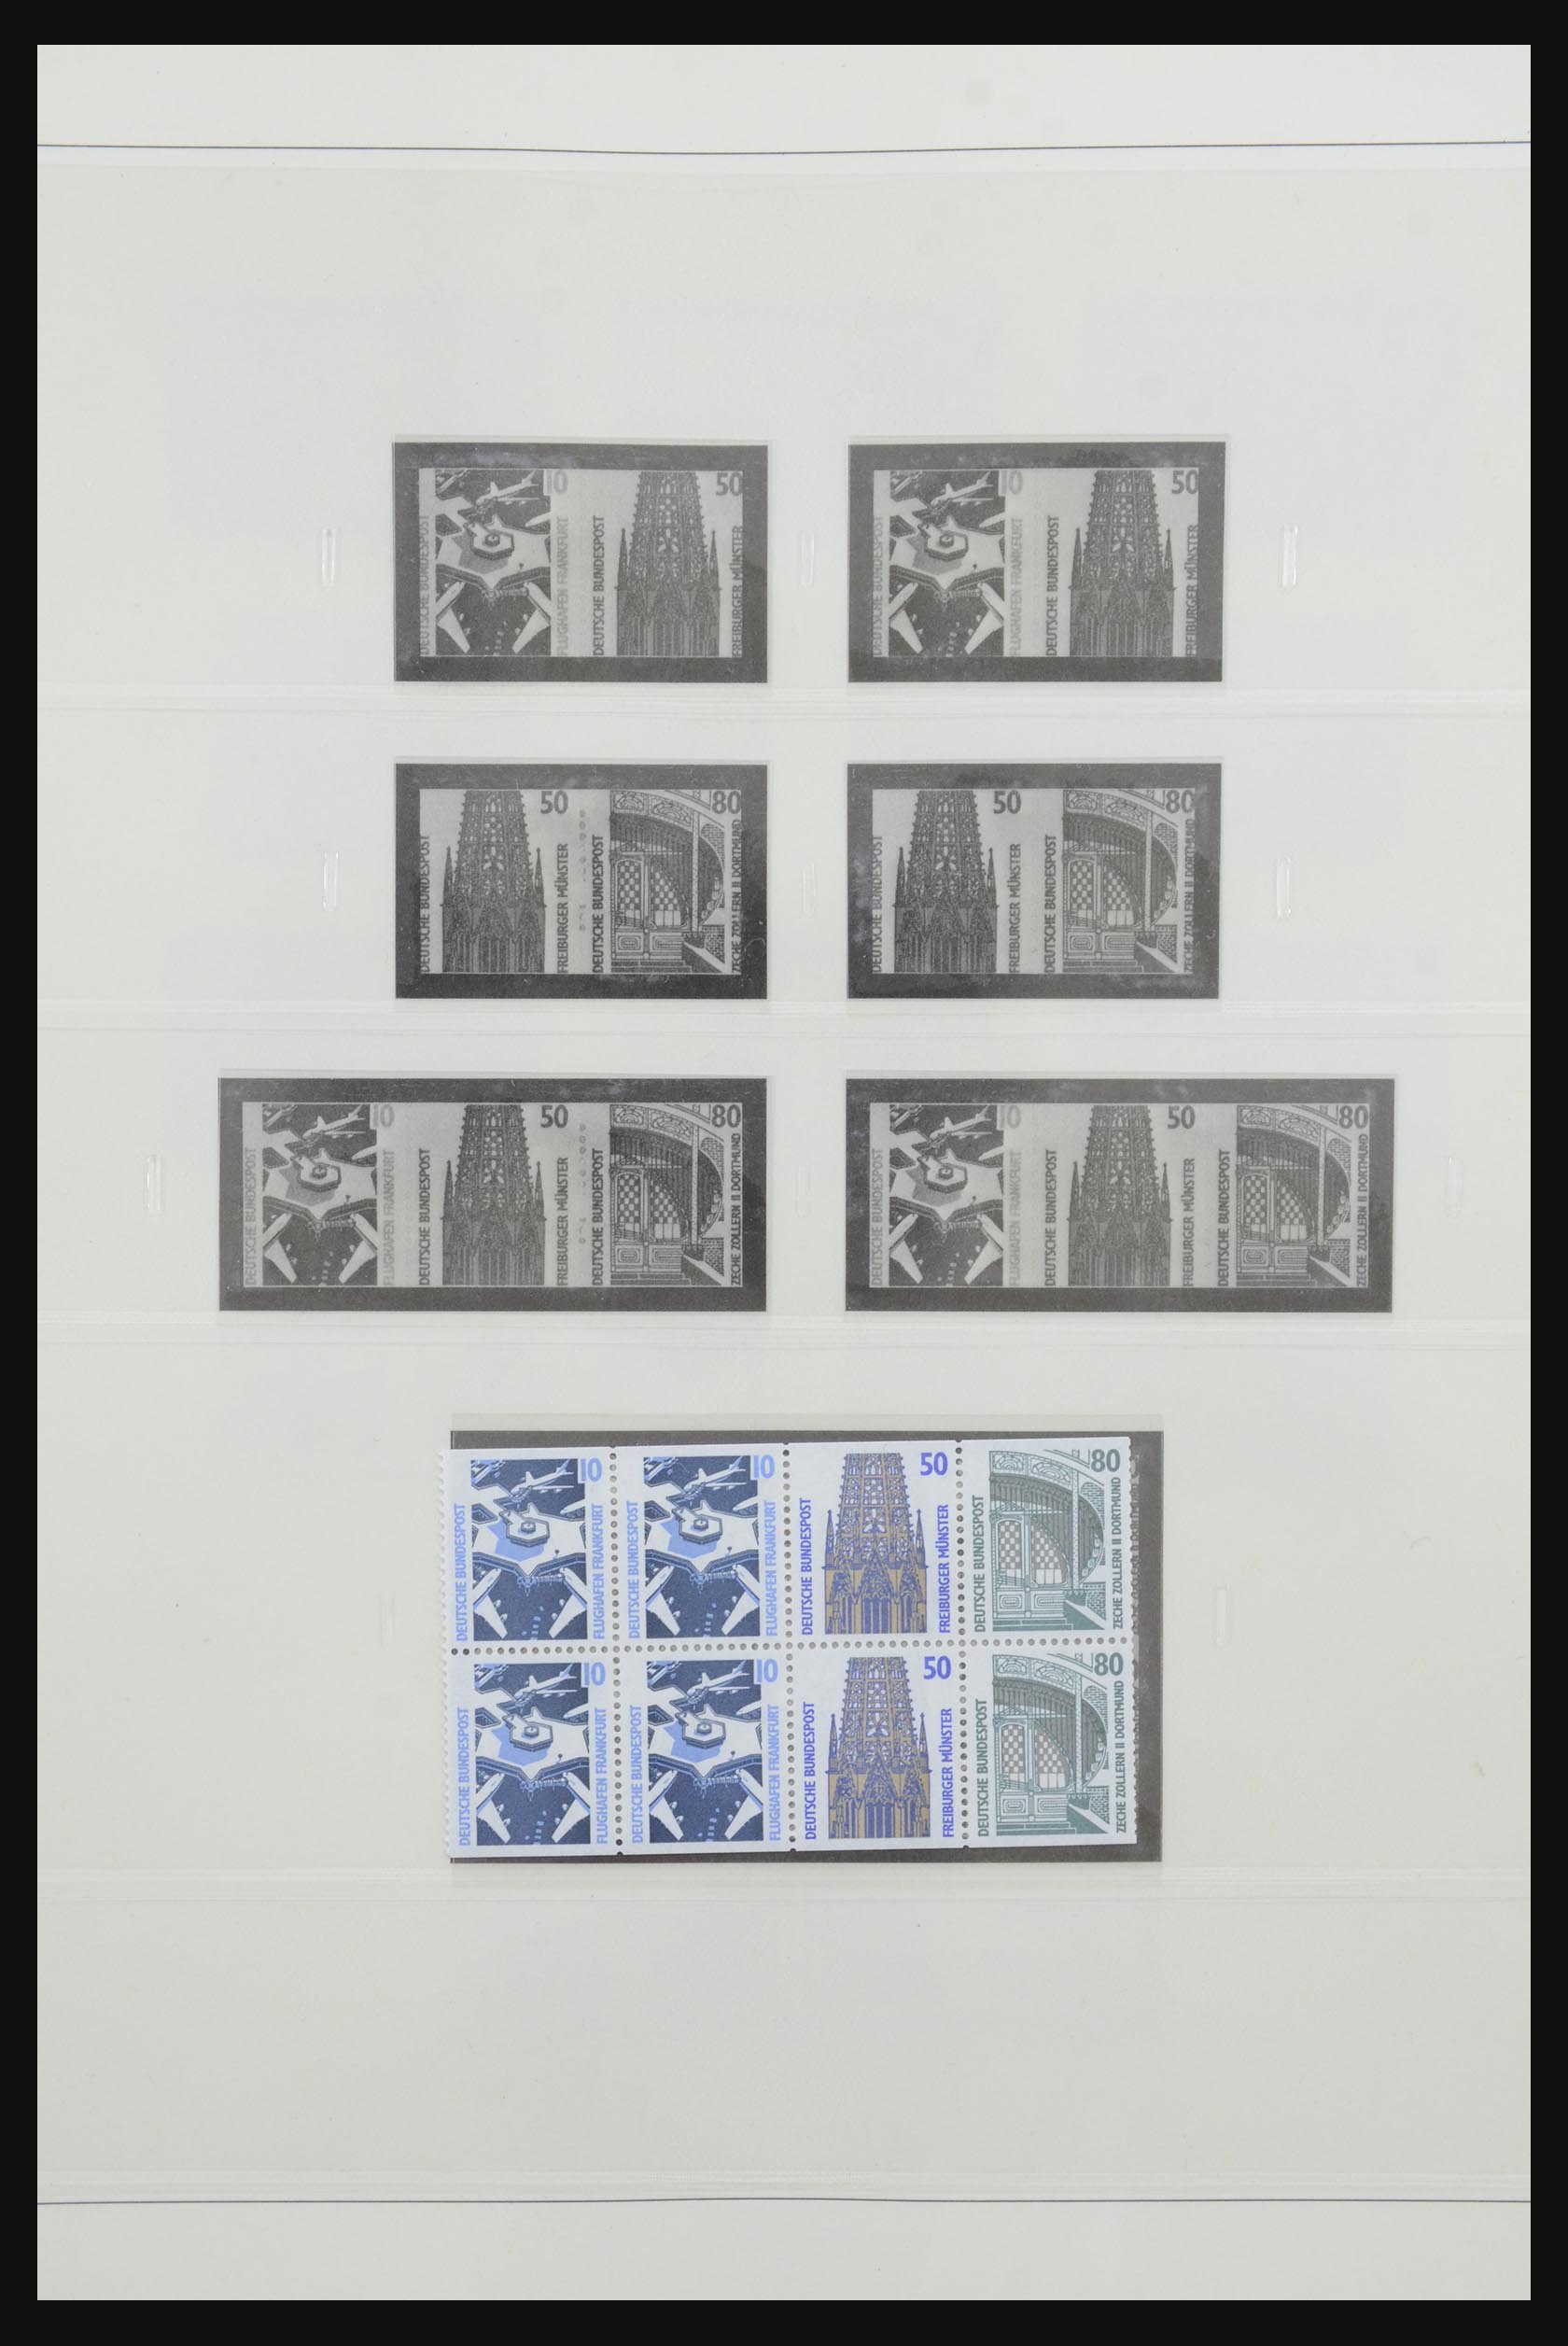 31842 069 - 31842 Bundespost combinaties 1951-2003.